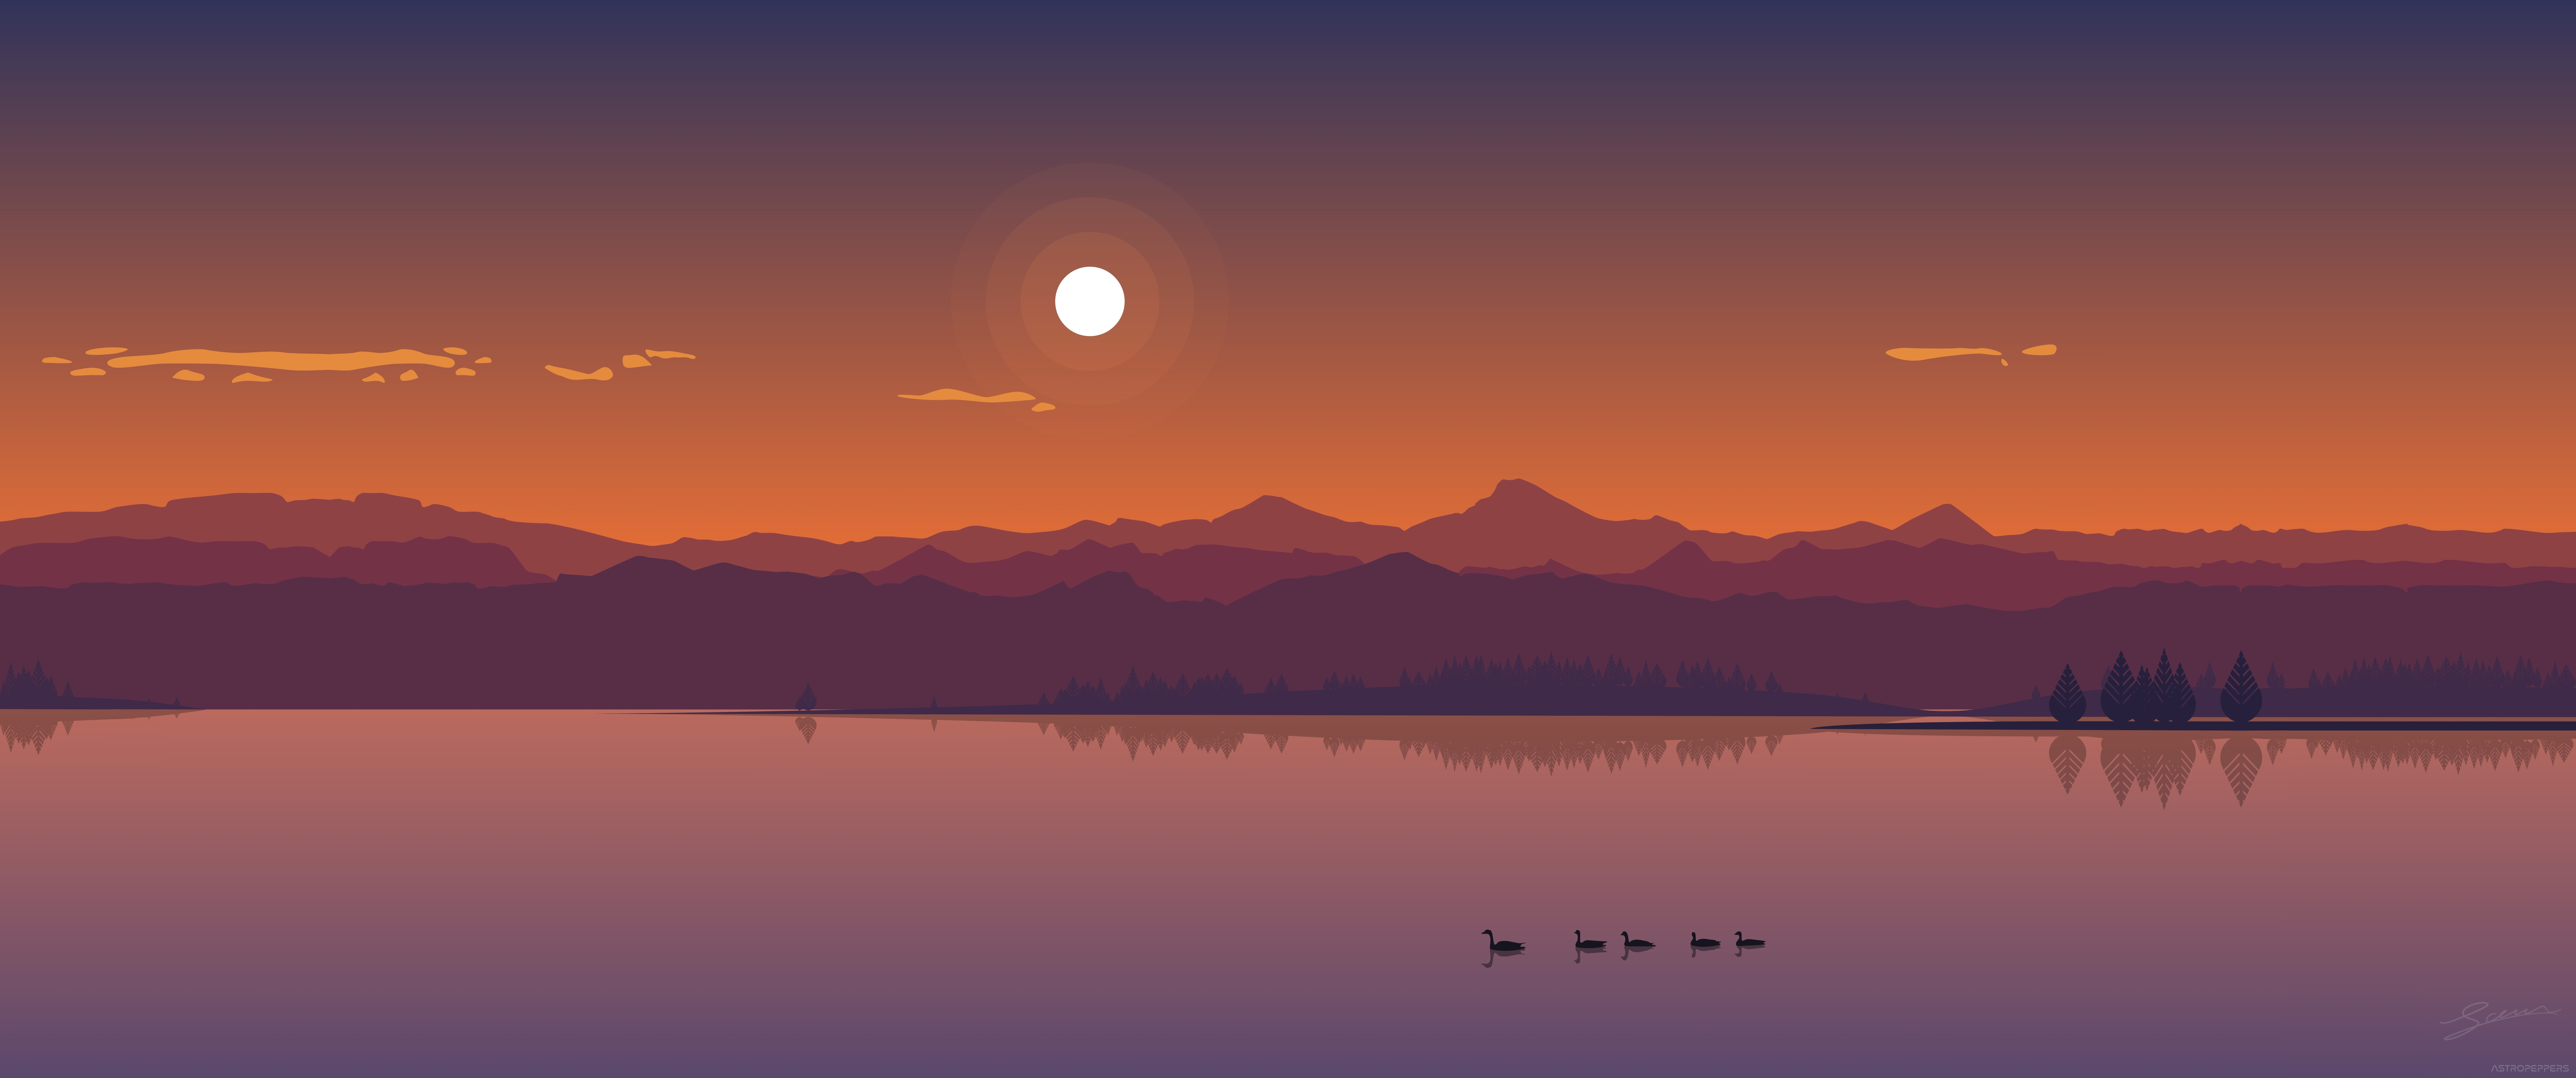 Lake Sunset Minimalism Flat Art Mountains Ultrawide 10750x4500